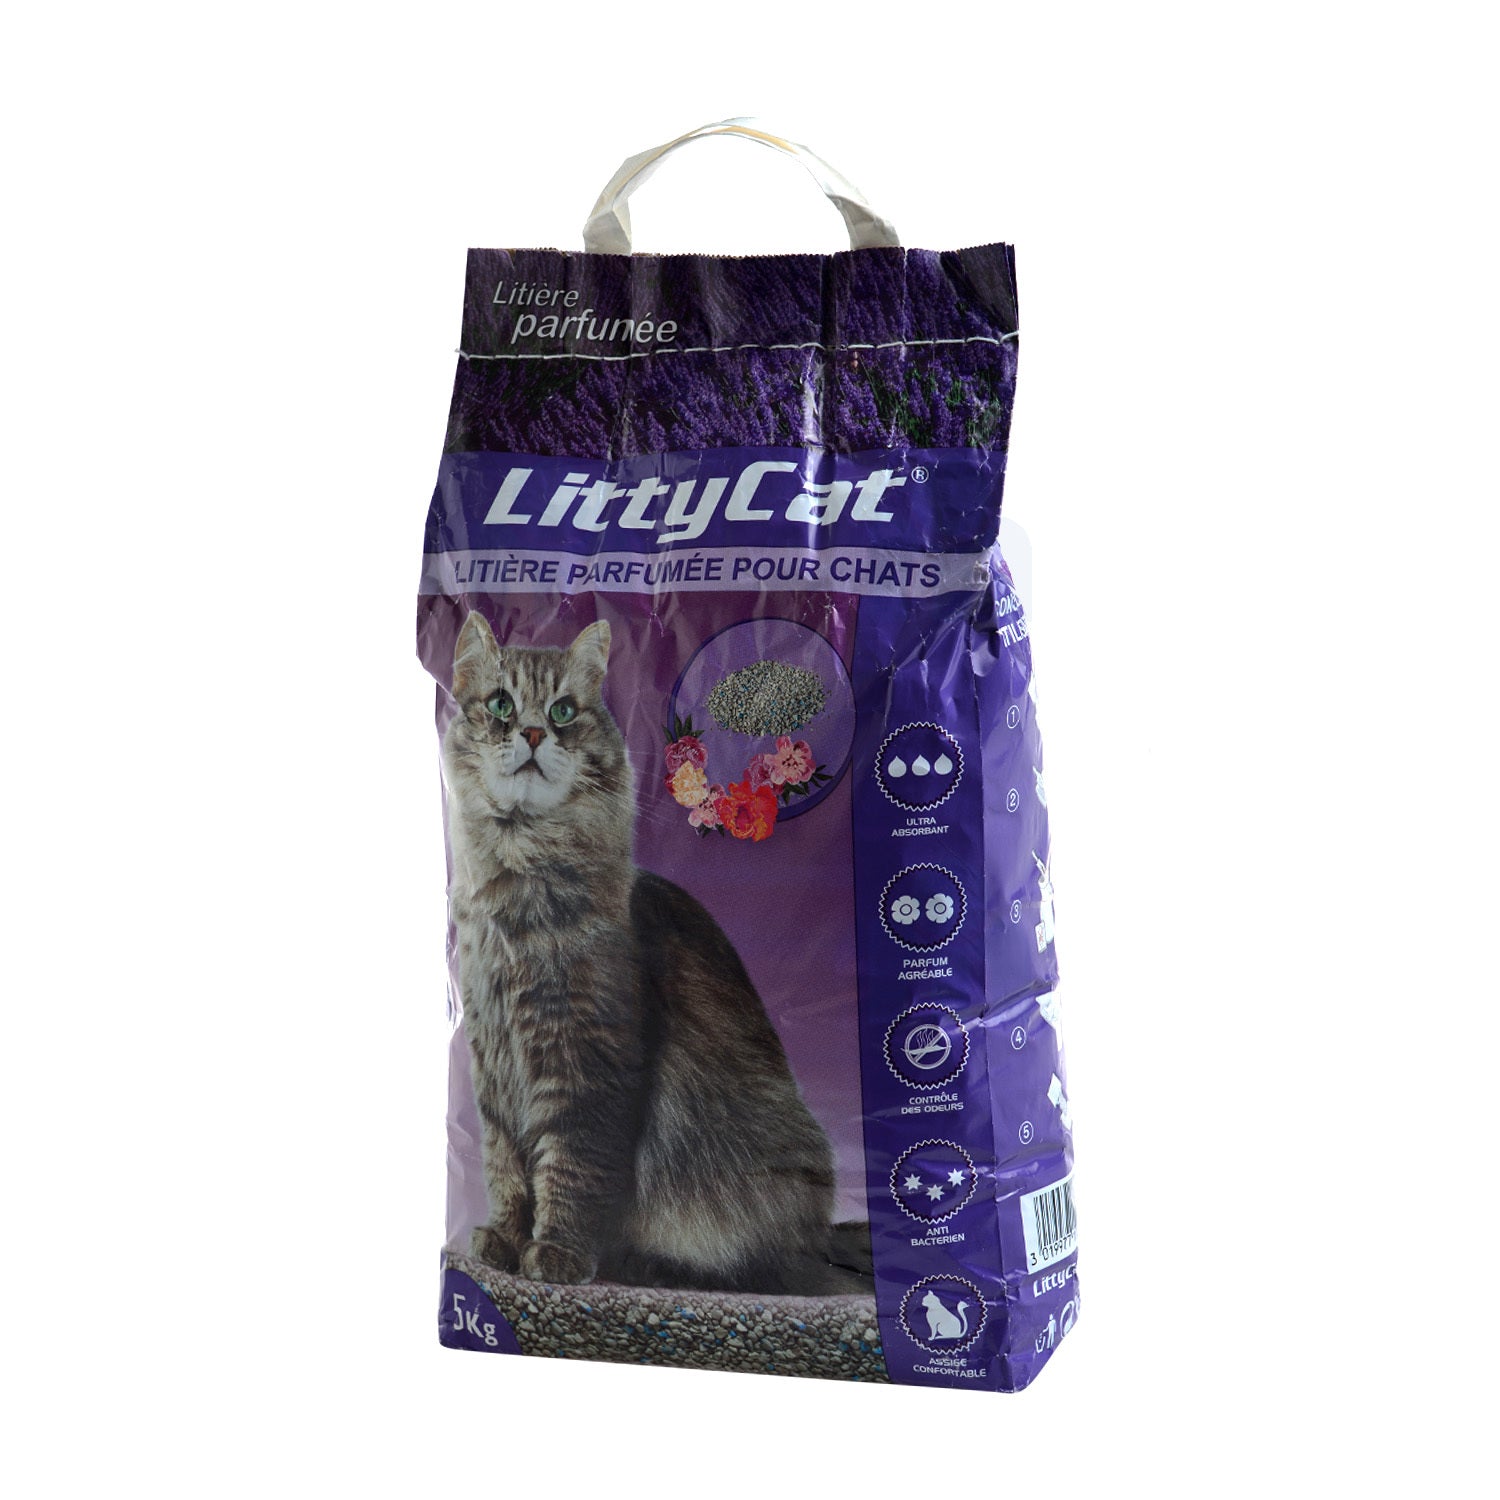 Littycat Scented Cat Litter 5Kg